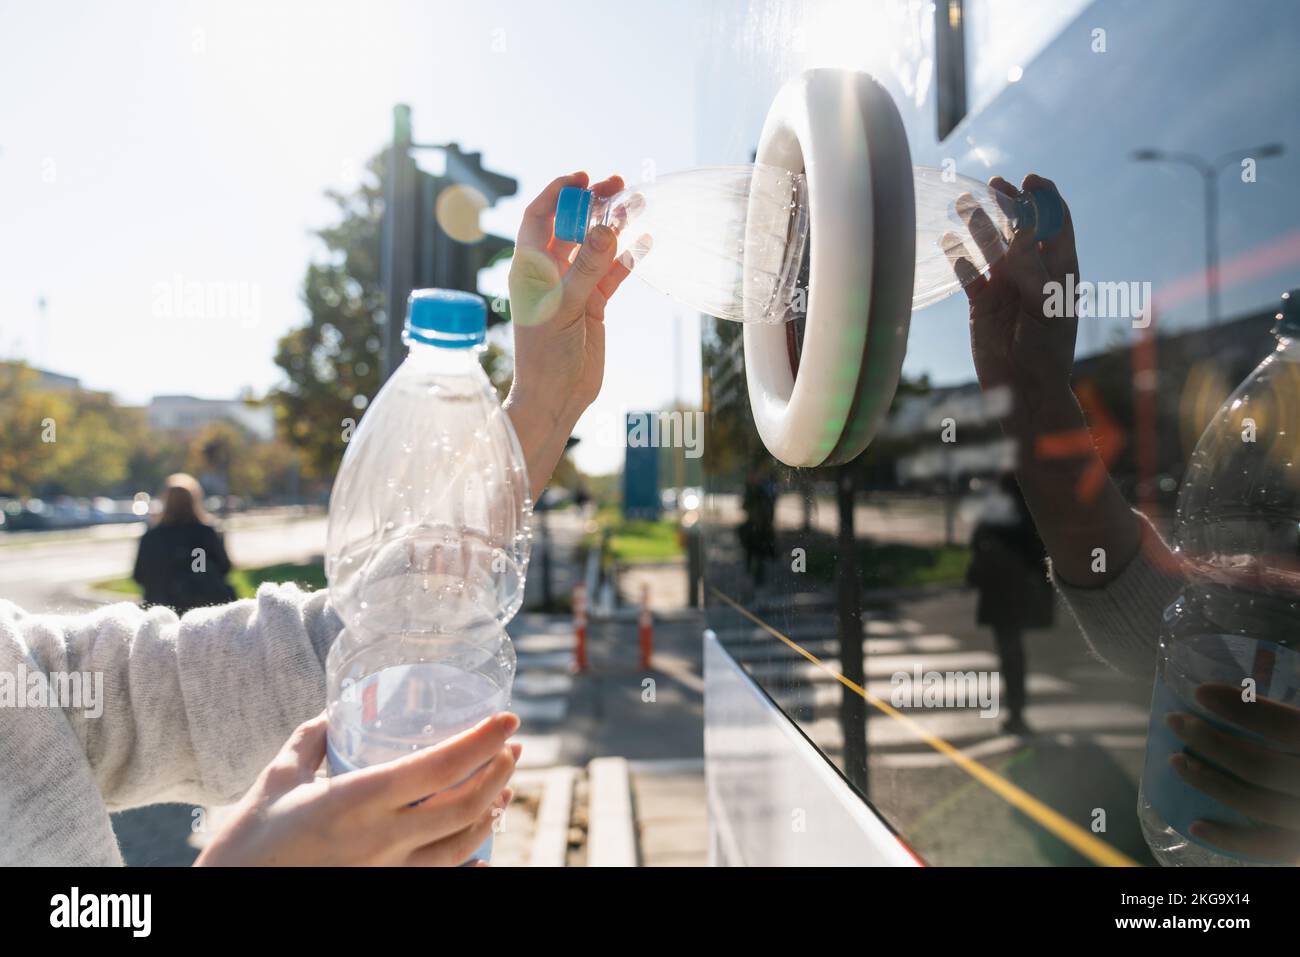 Une femme utilise une machine en libre-service pour recevoir des bouteilles et des canettes en plastique utilisées dans une rue urbaine Banque D'Images